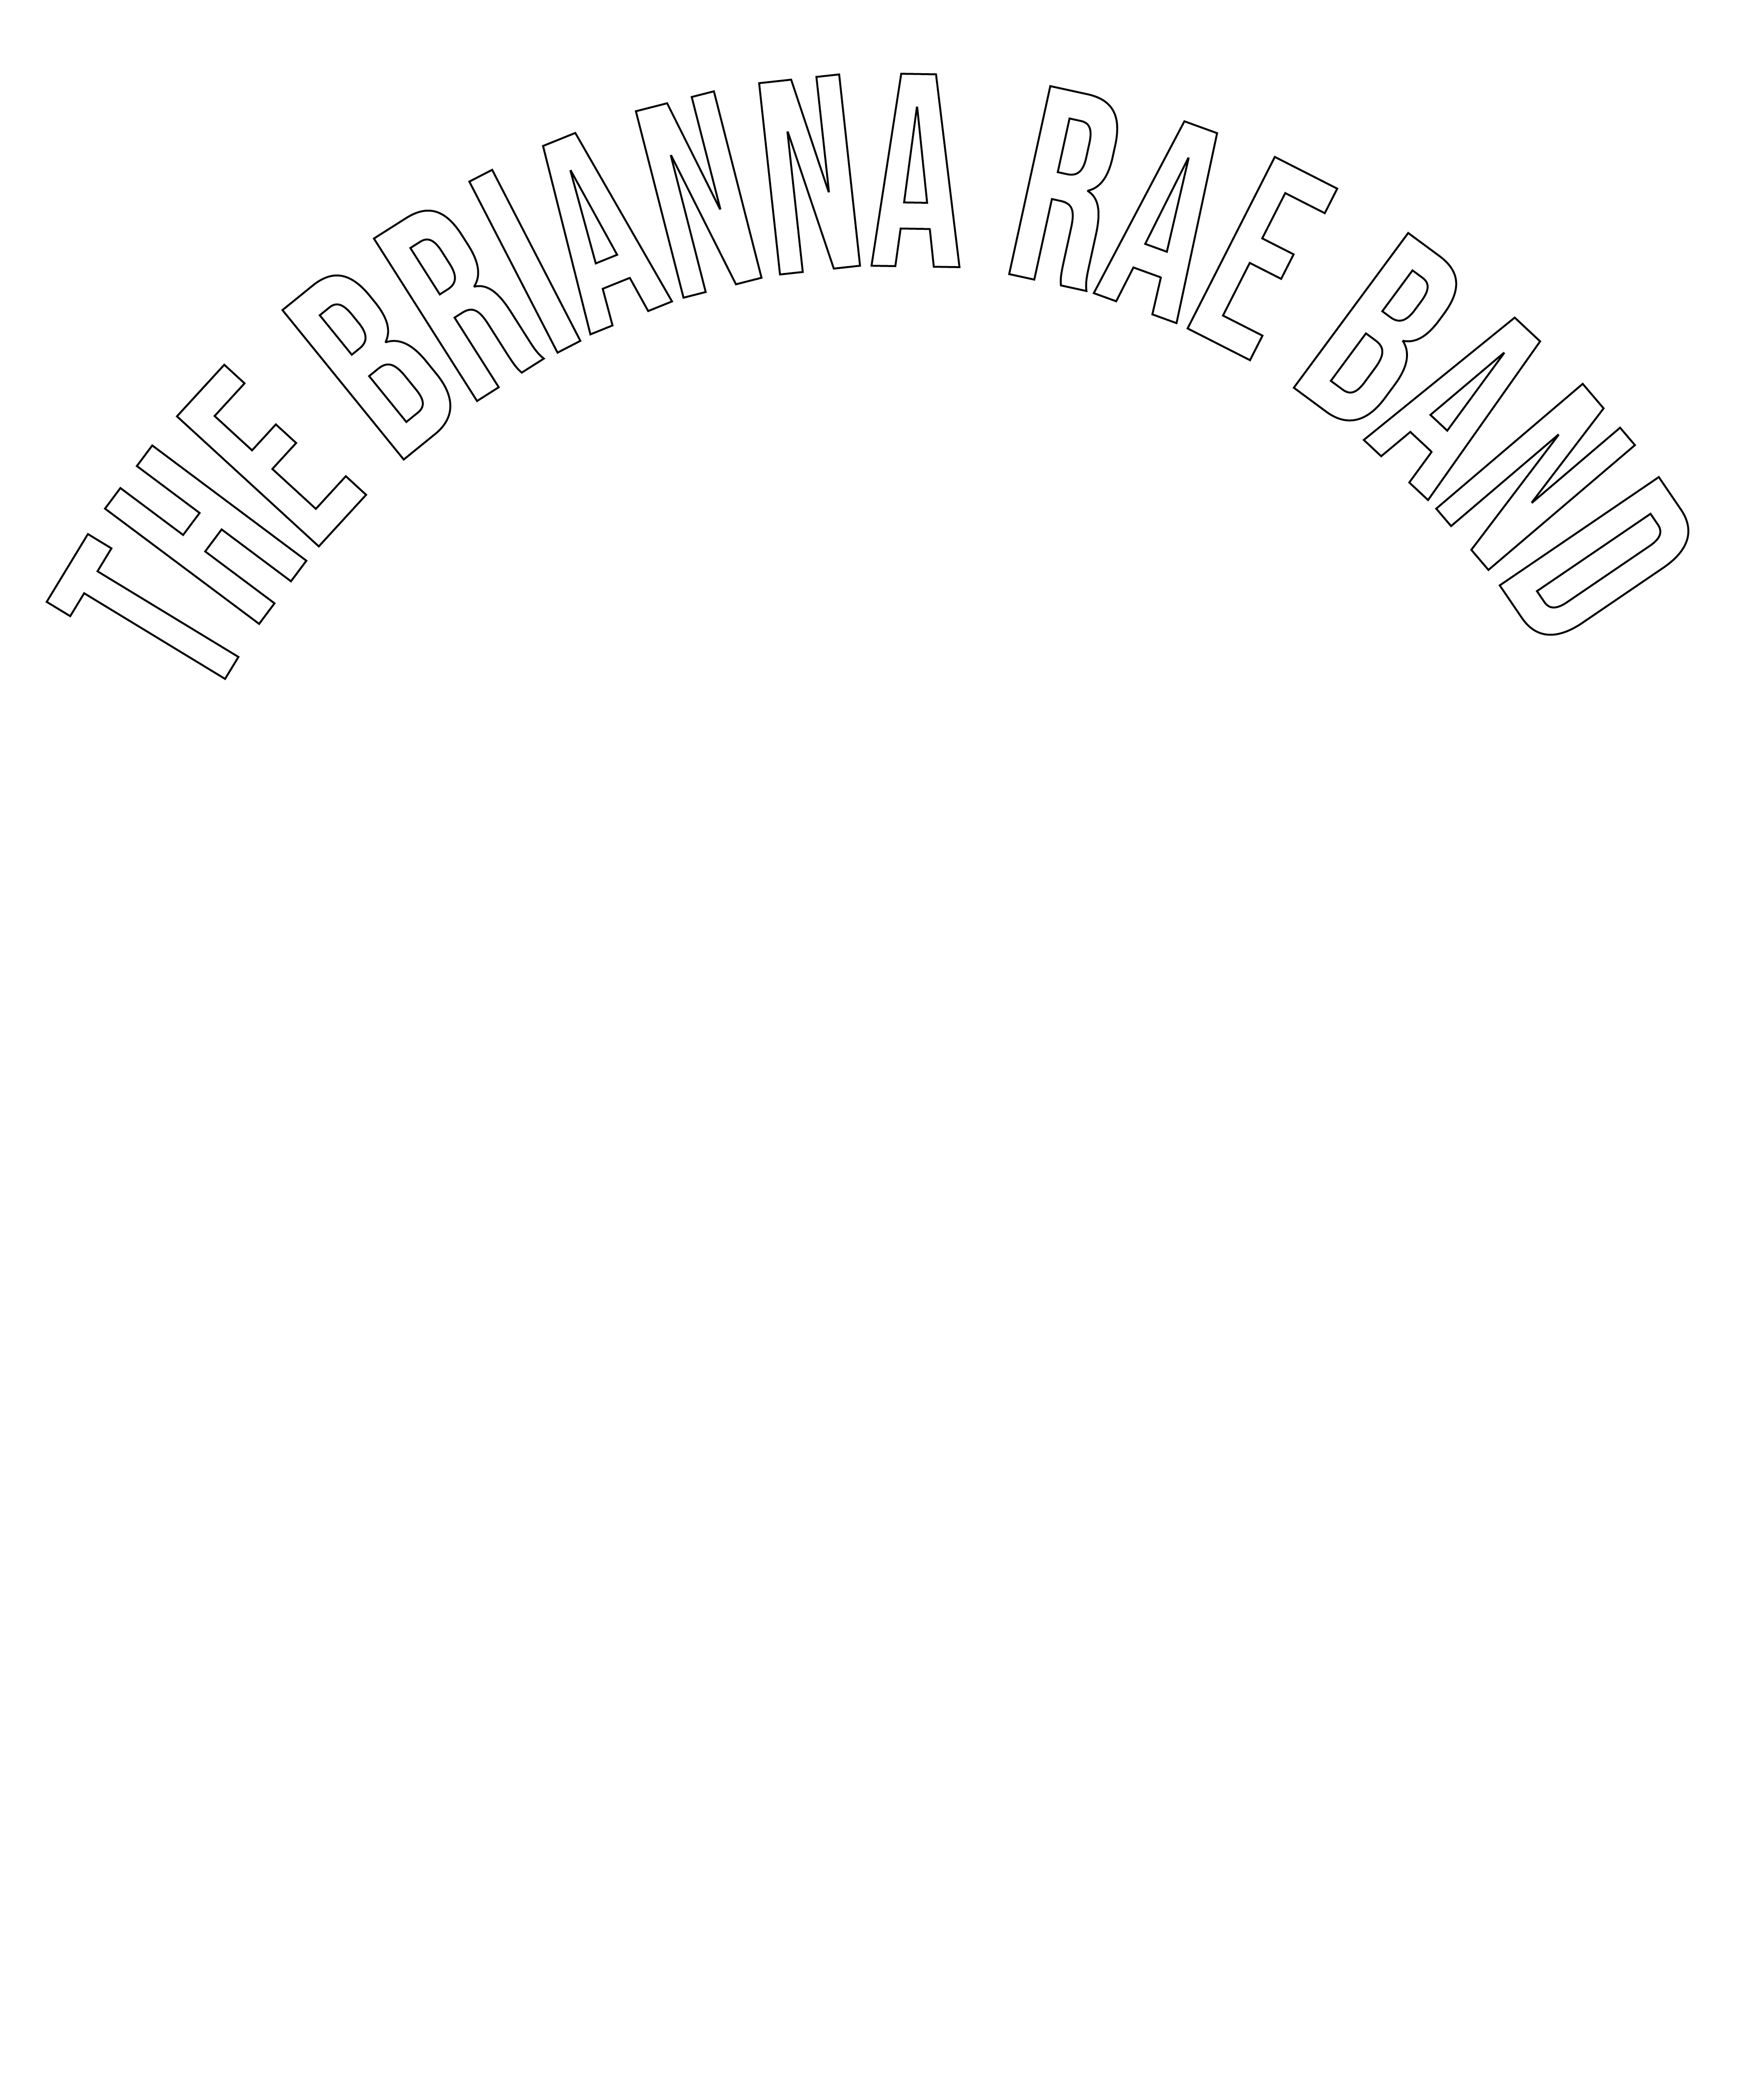 The Brianna Rae Band